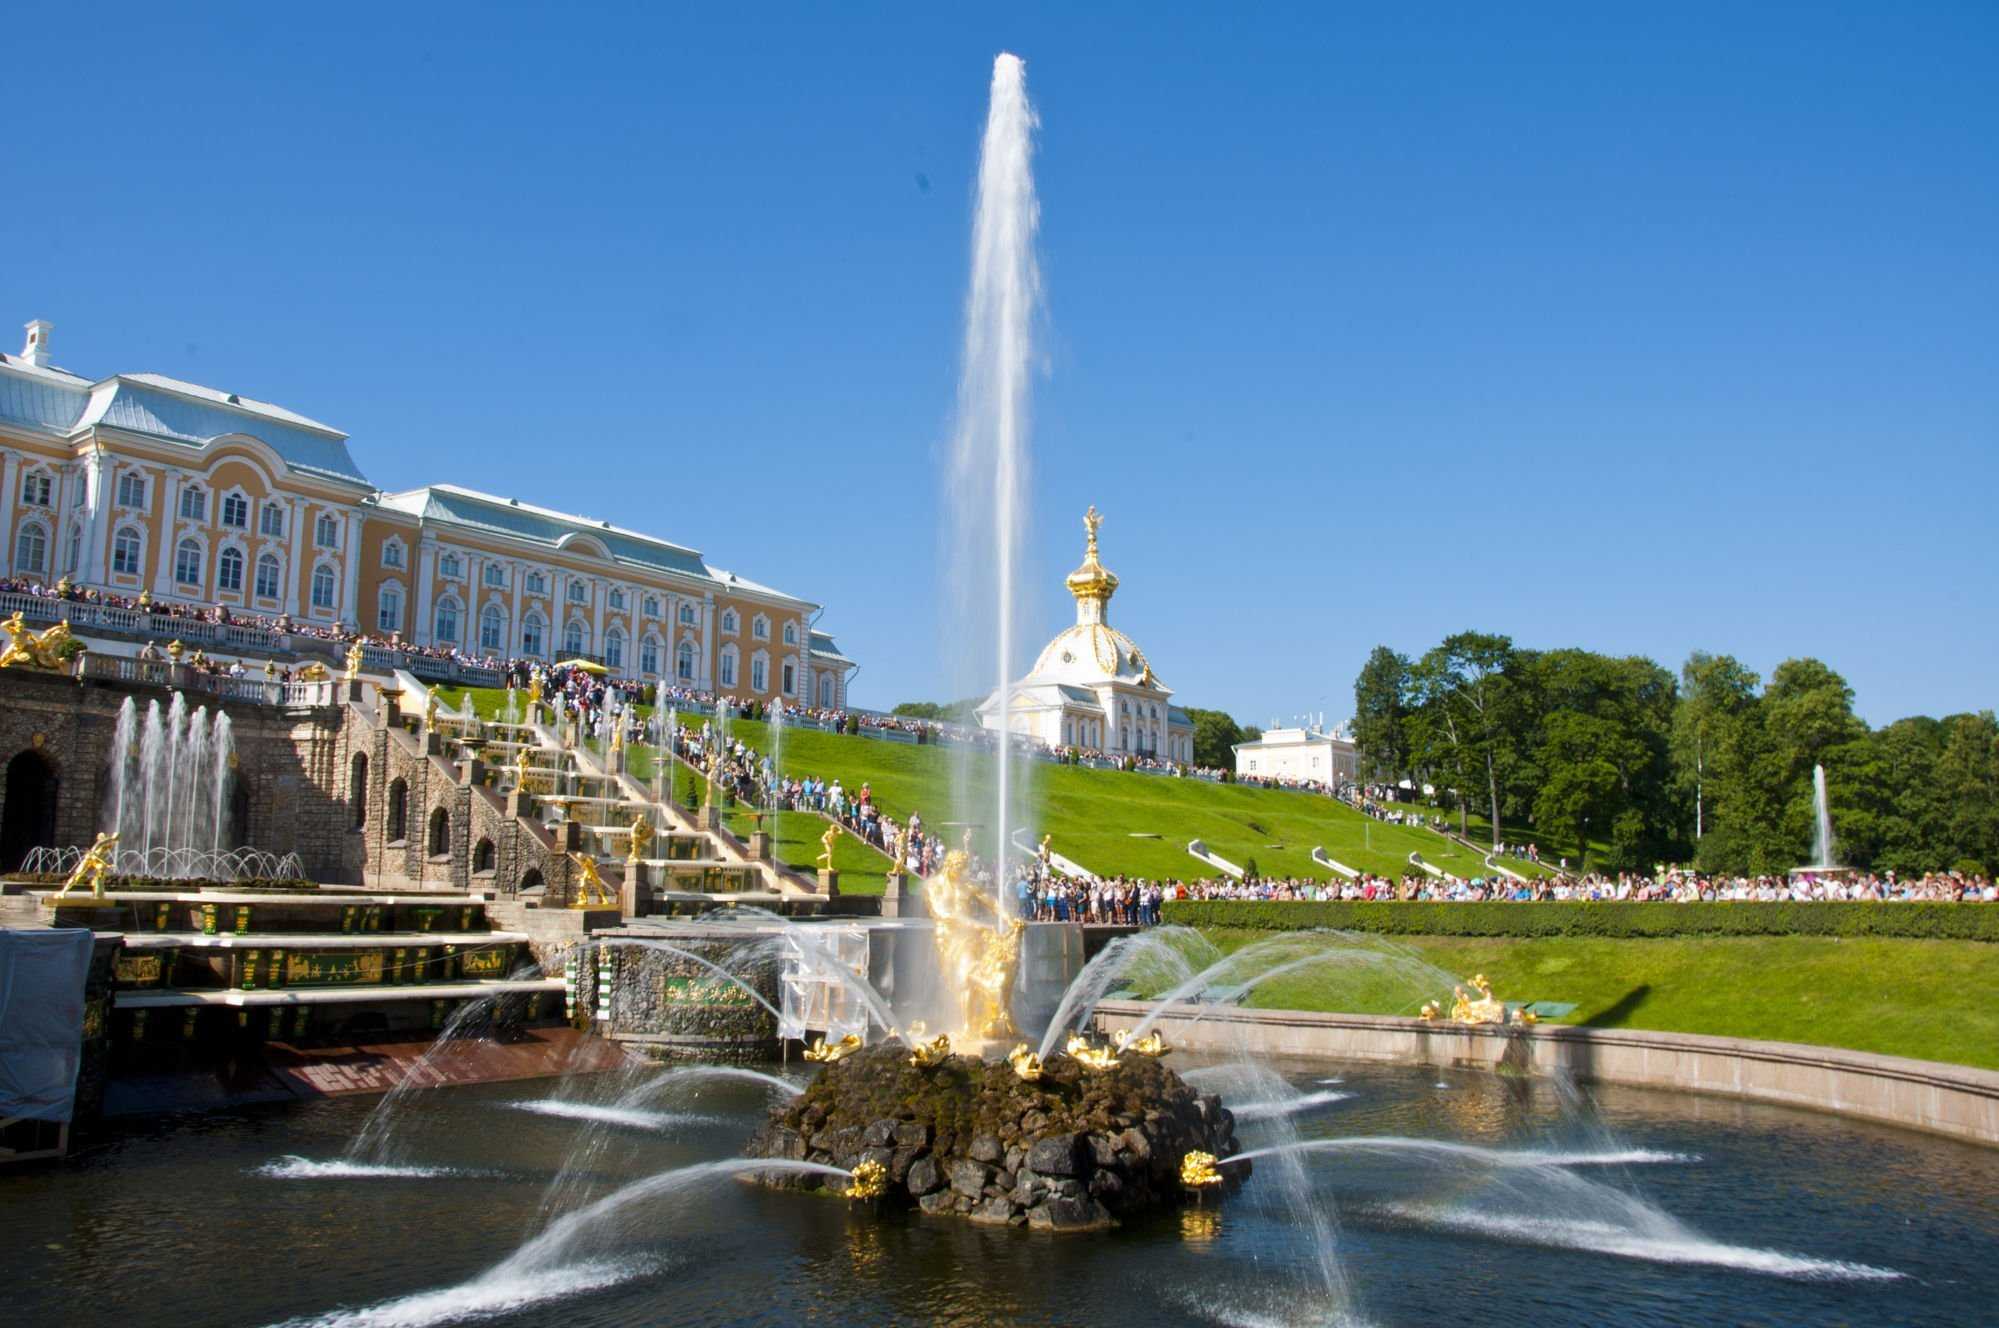 Дворцово-парковый ансамбль петергоф — «имперский блеск дворцов и парков» | все о путешествиях